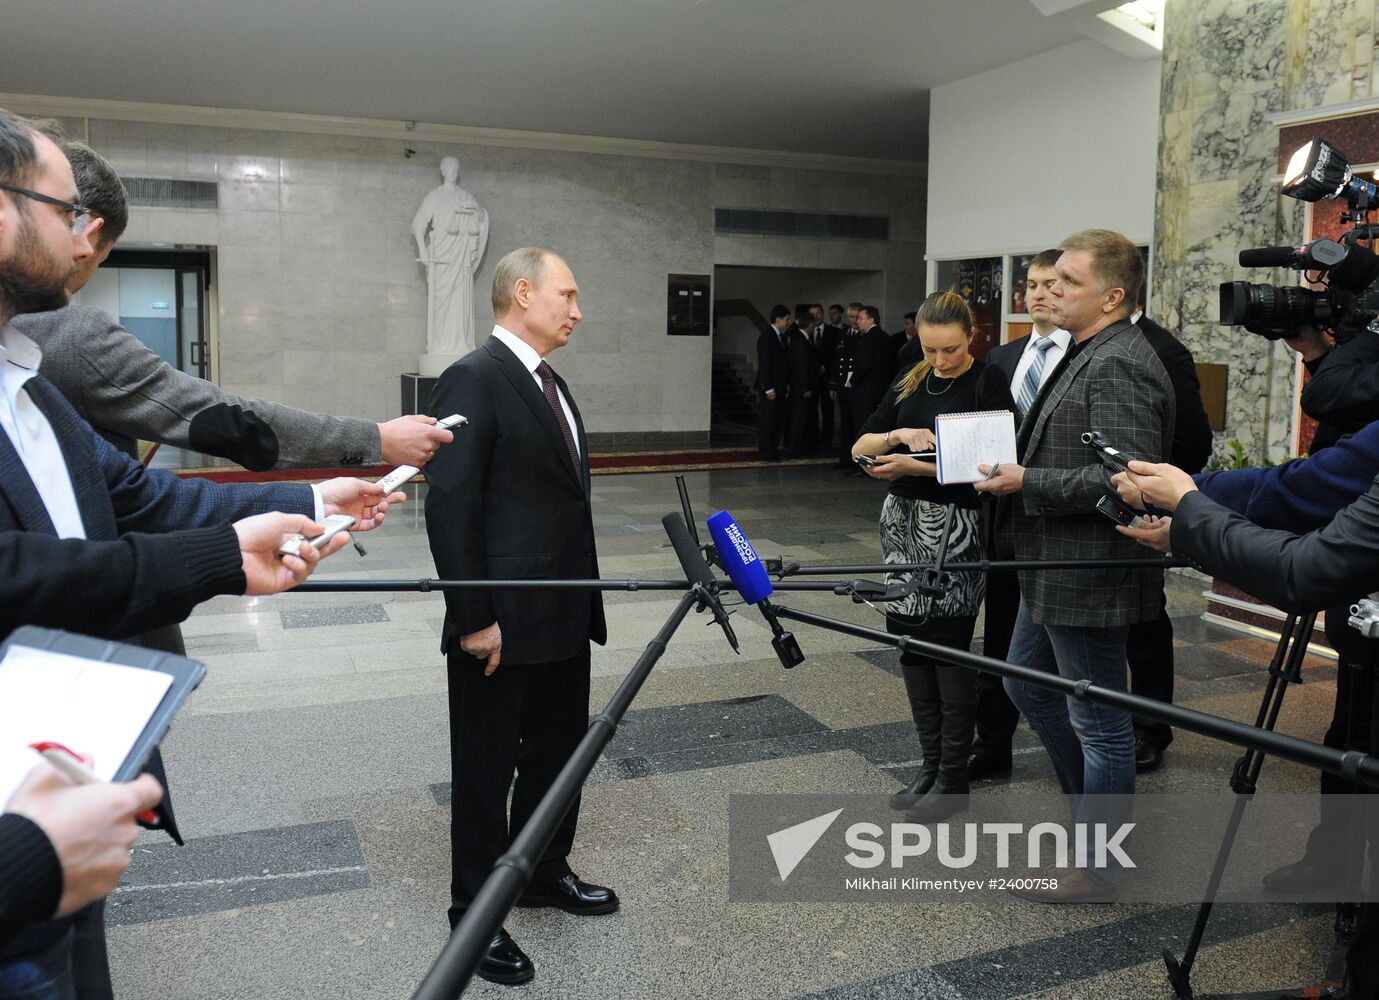 Vladimir Putin attends Russian Interior Ministry board meeting